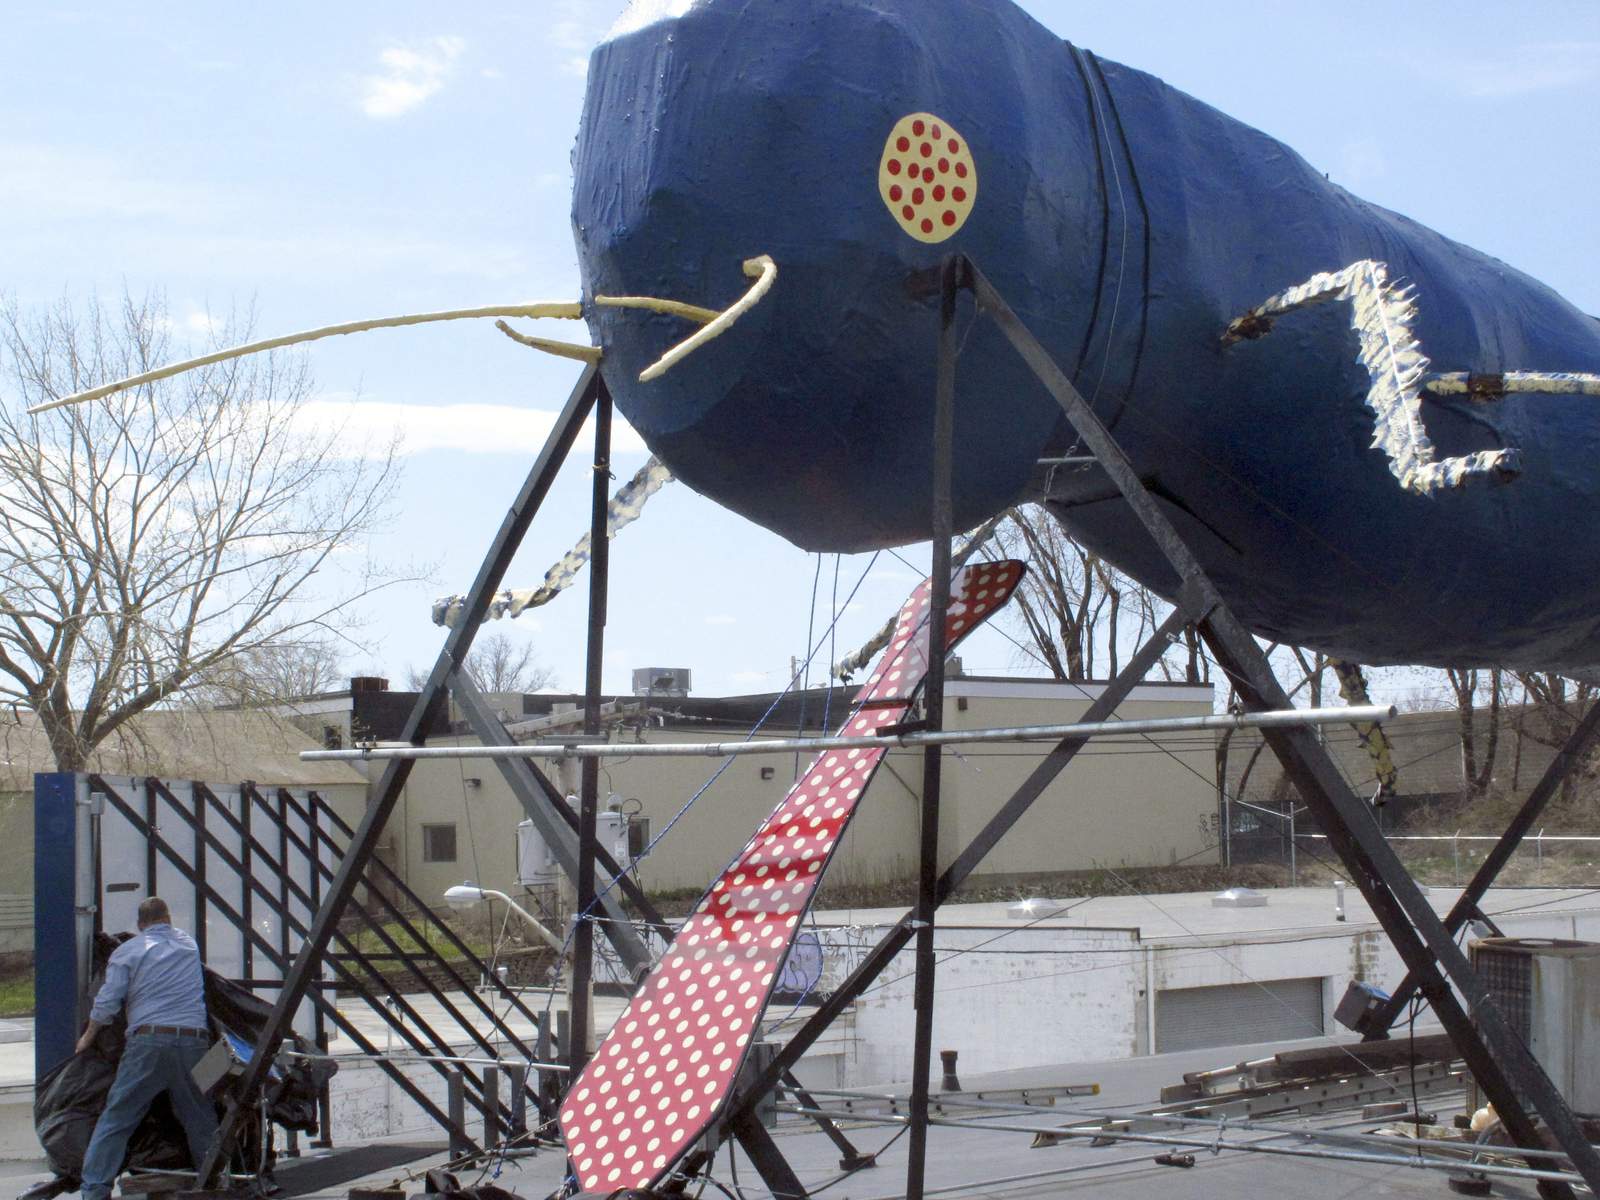 Creator of RI's beloved Big Blue Bug landmark dies at 88